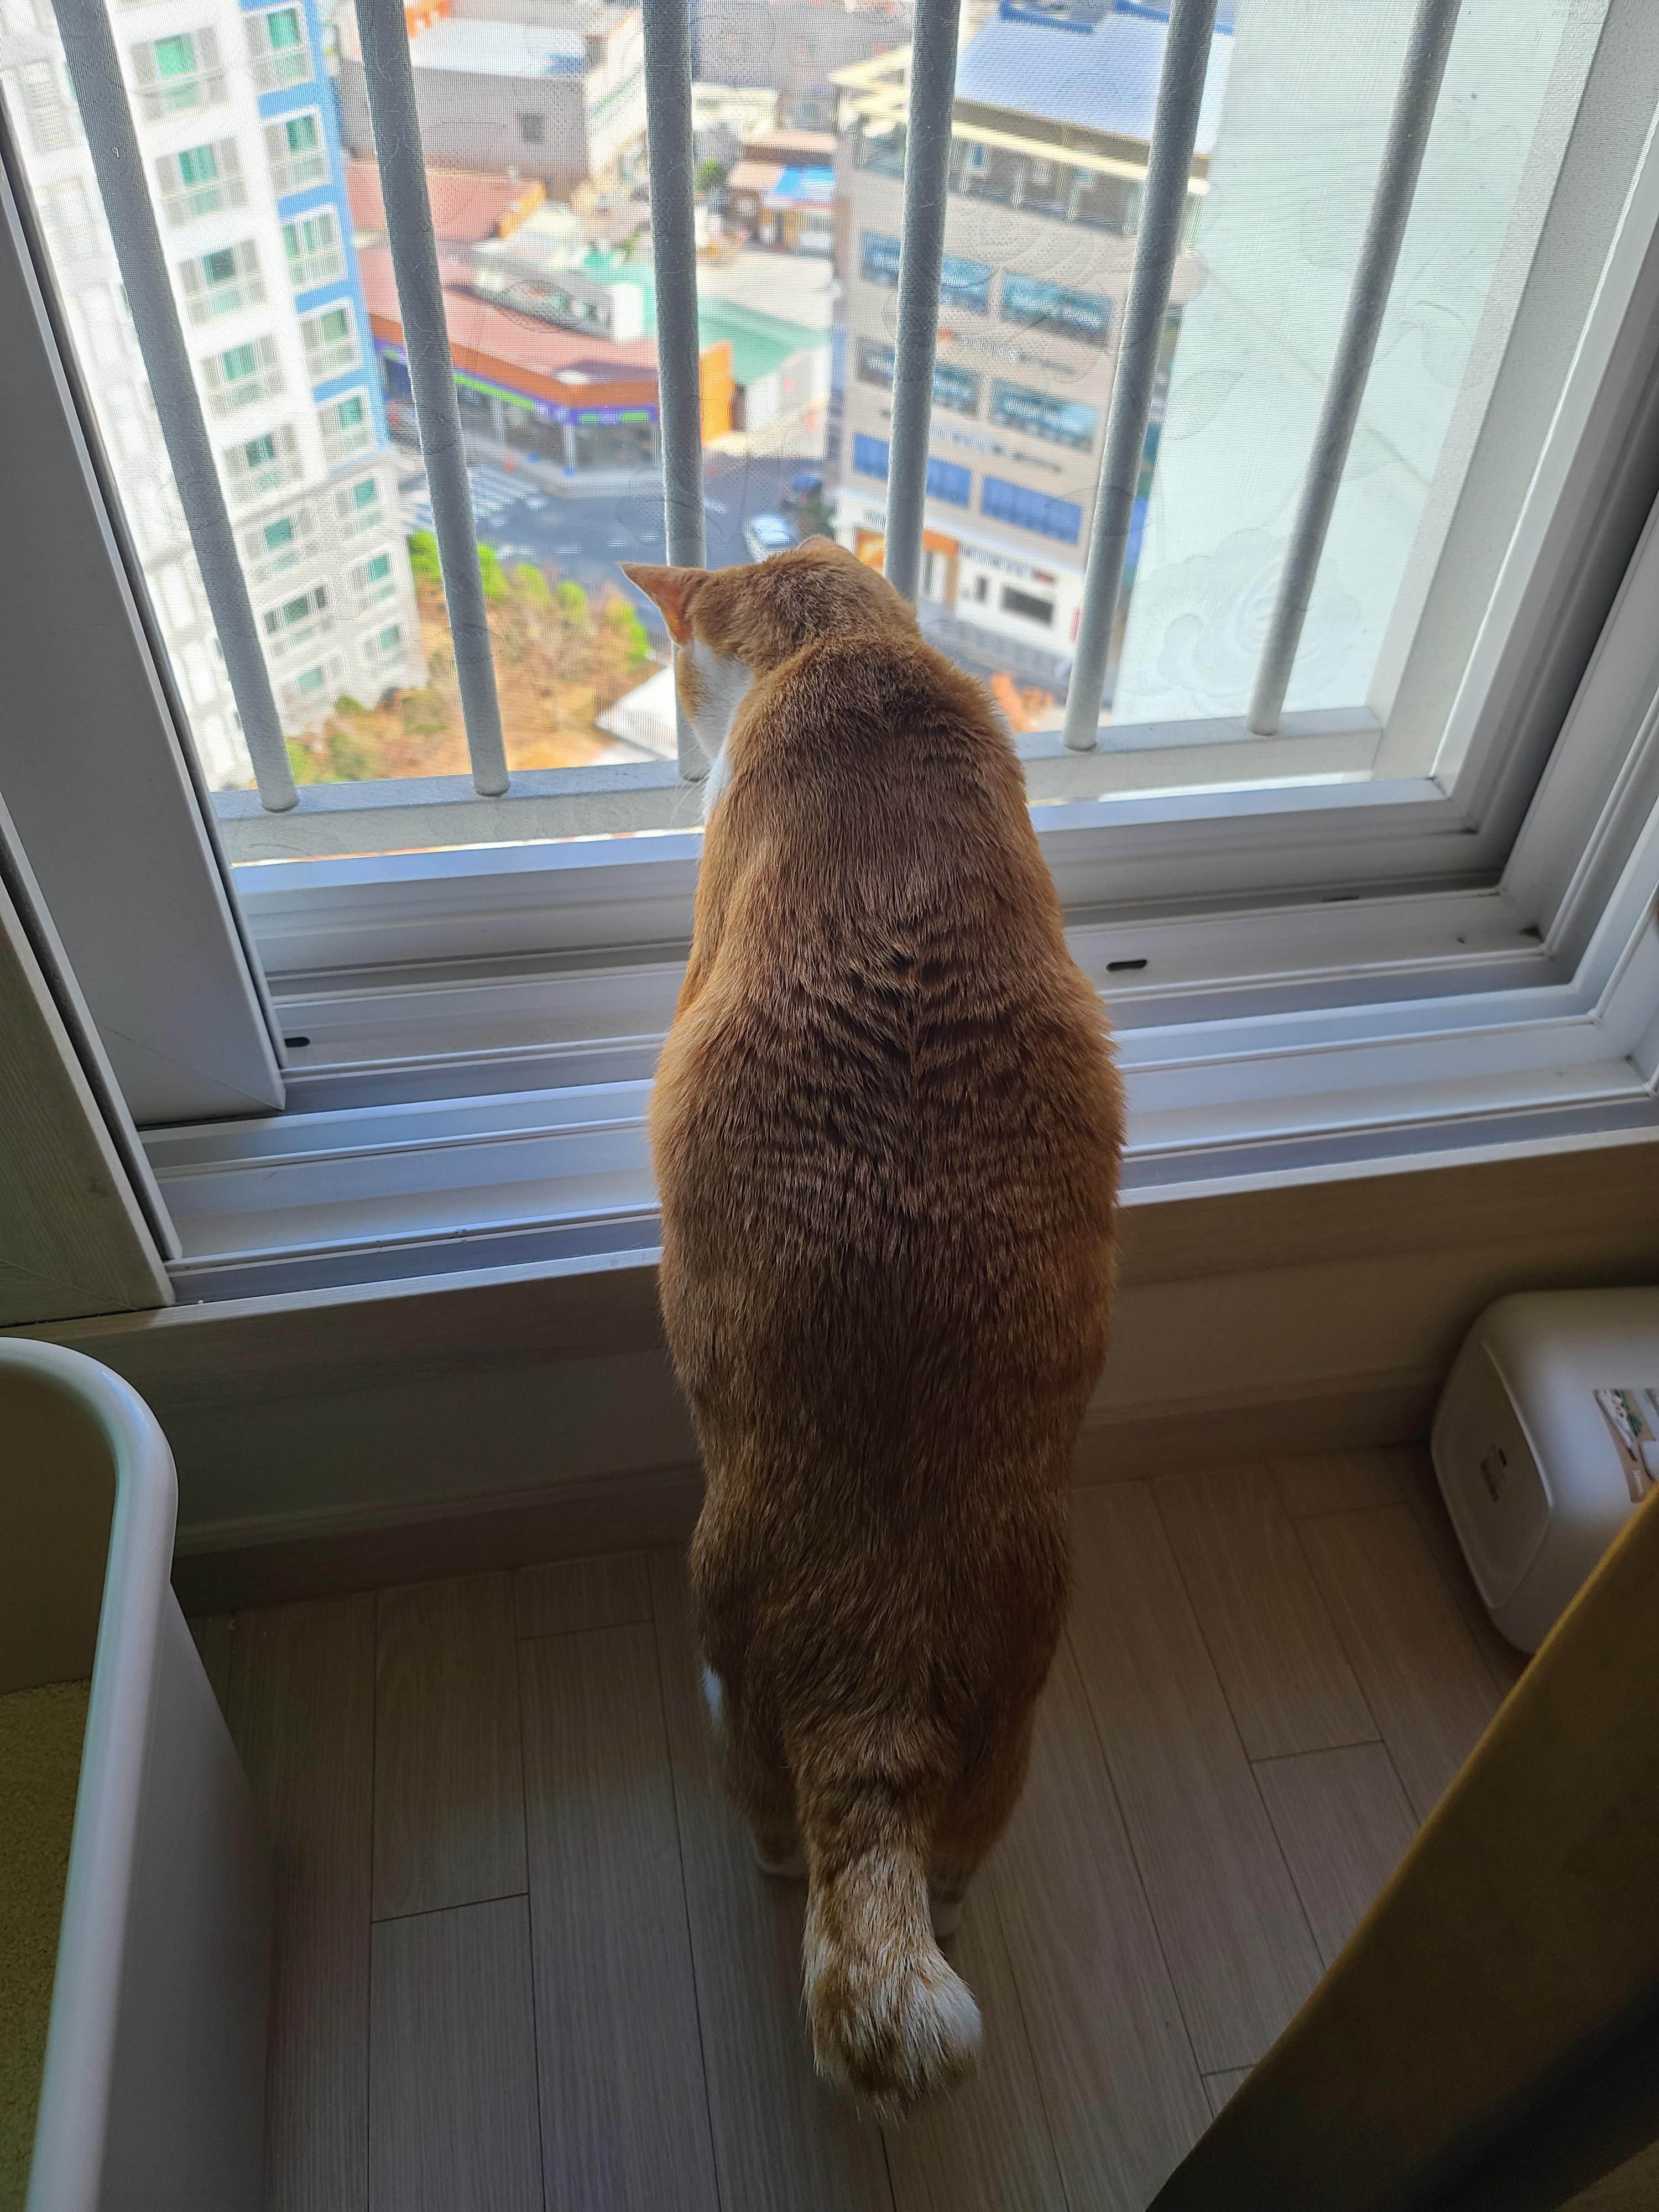 창밖 구경하는 고양이들의 뒷모습 ㅋ(feat.집사의 최애)